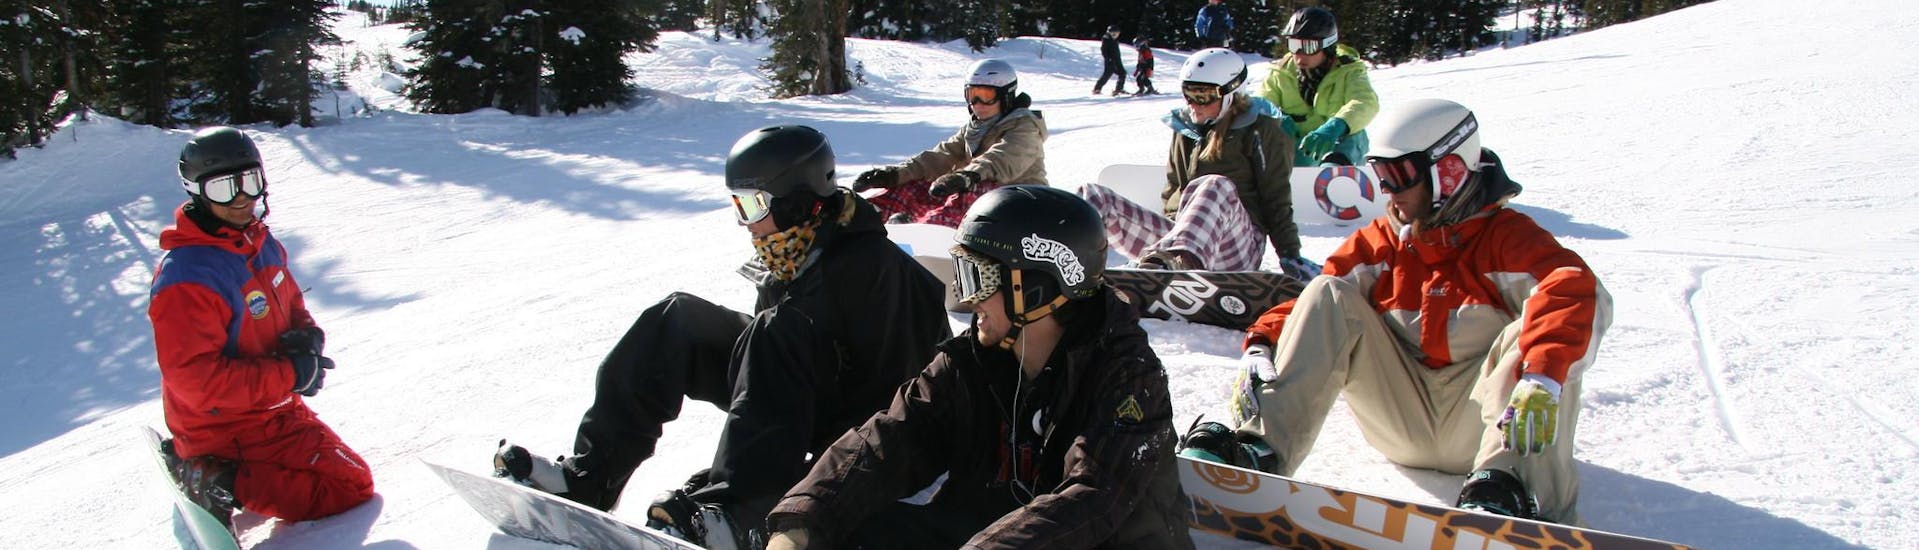 Gruppo di snowboarder che si divertono insieme durante una lezione di snowboard per principianti